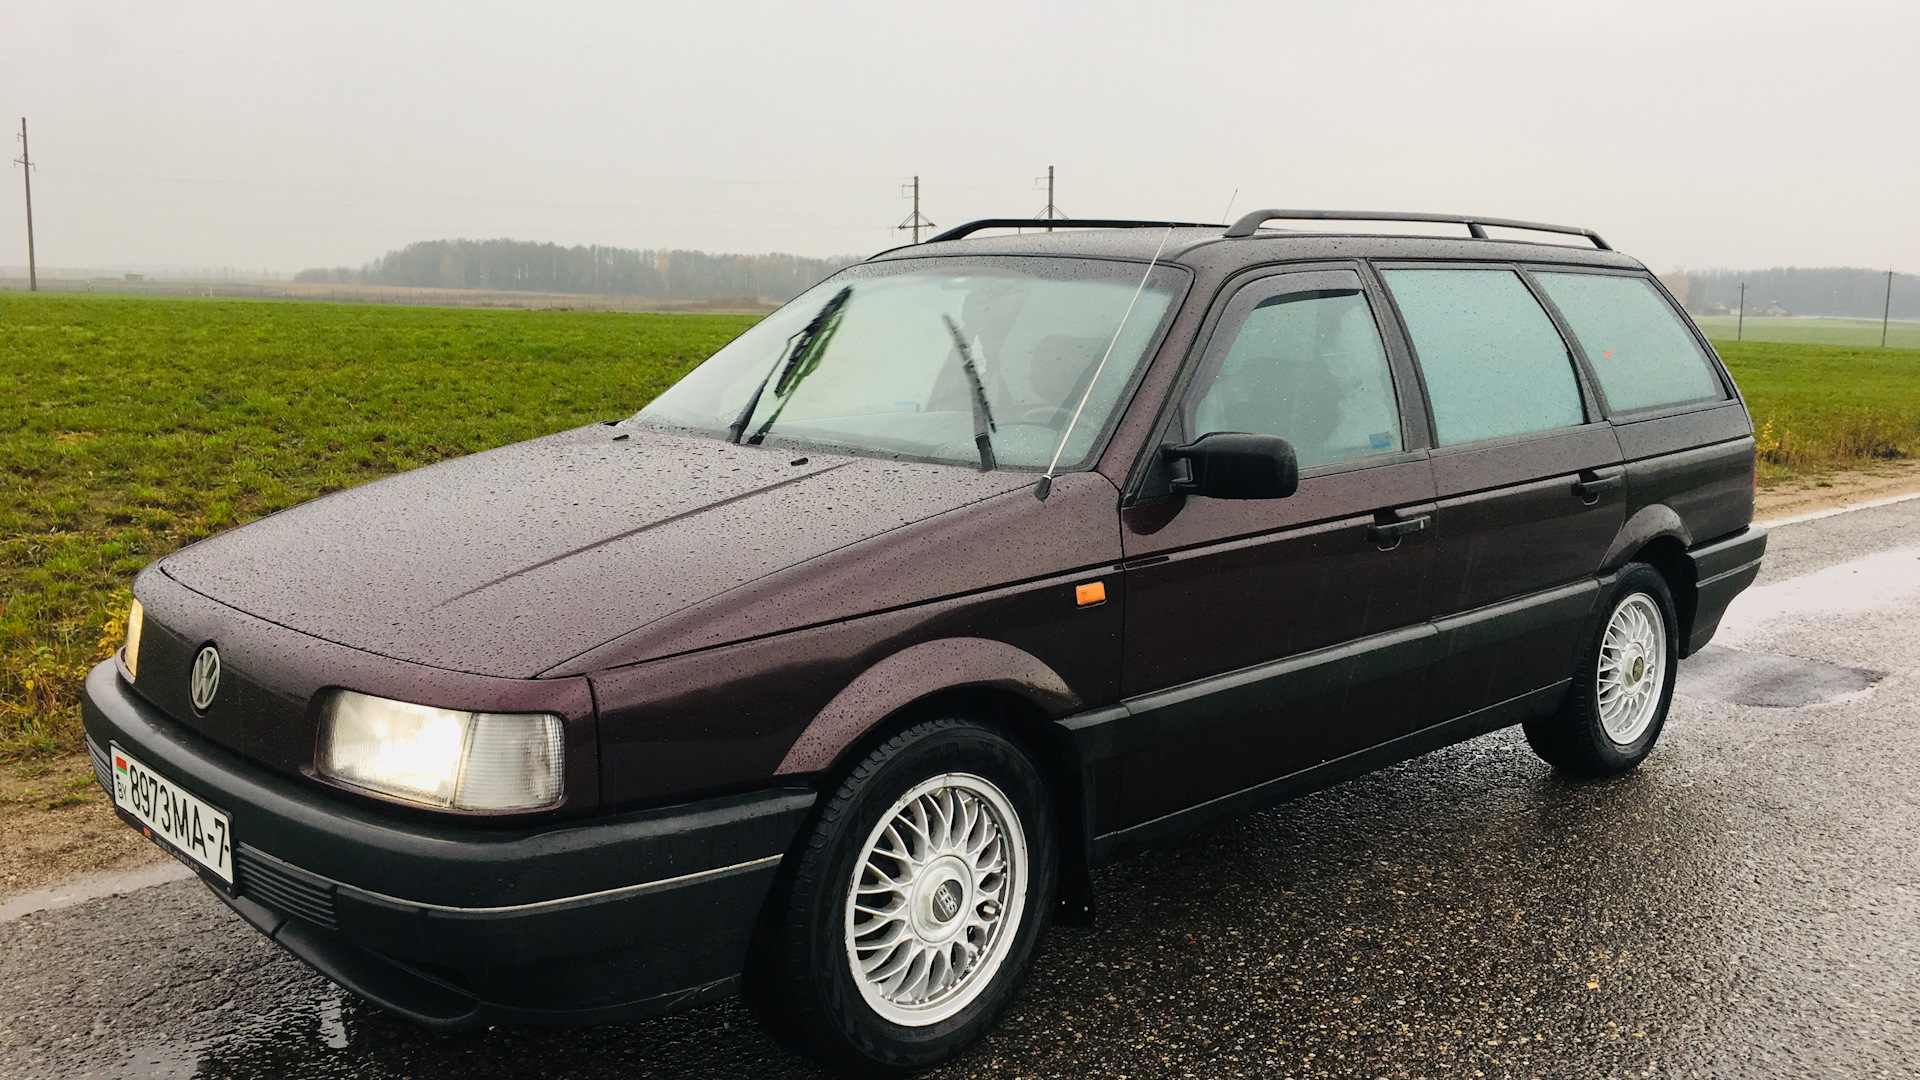 Фольксваген пассат универсал 1. Фольксваген Пассат б3 универсал ( 1988 ). Volkswagen Passat b3 универсал 1993. Фольксваген Пассат б3 универсал 1991. Фольксваген Пассат б3 1993.